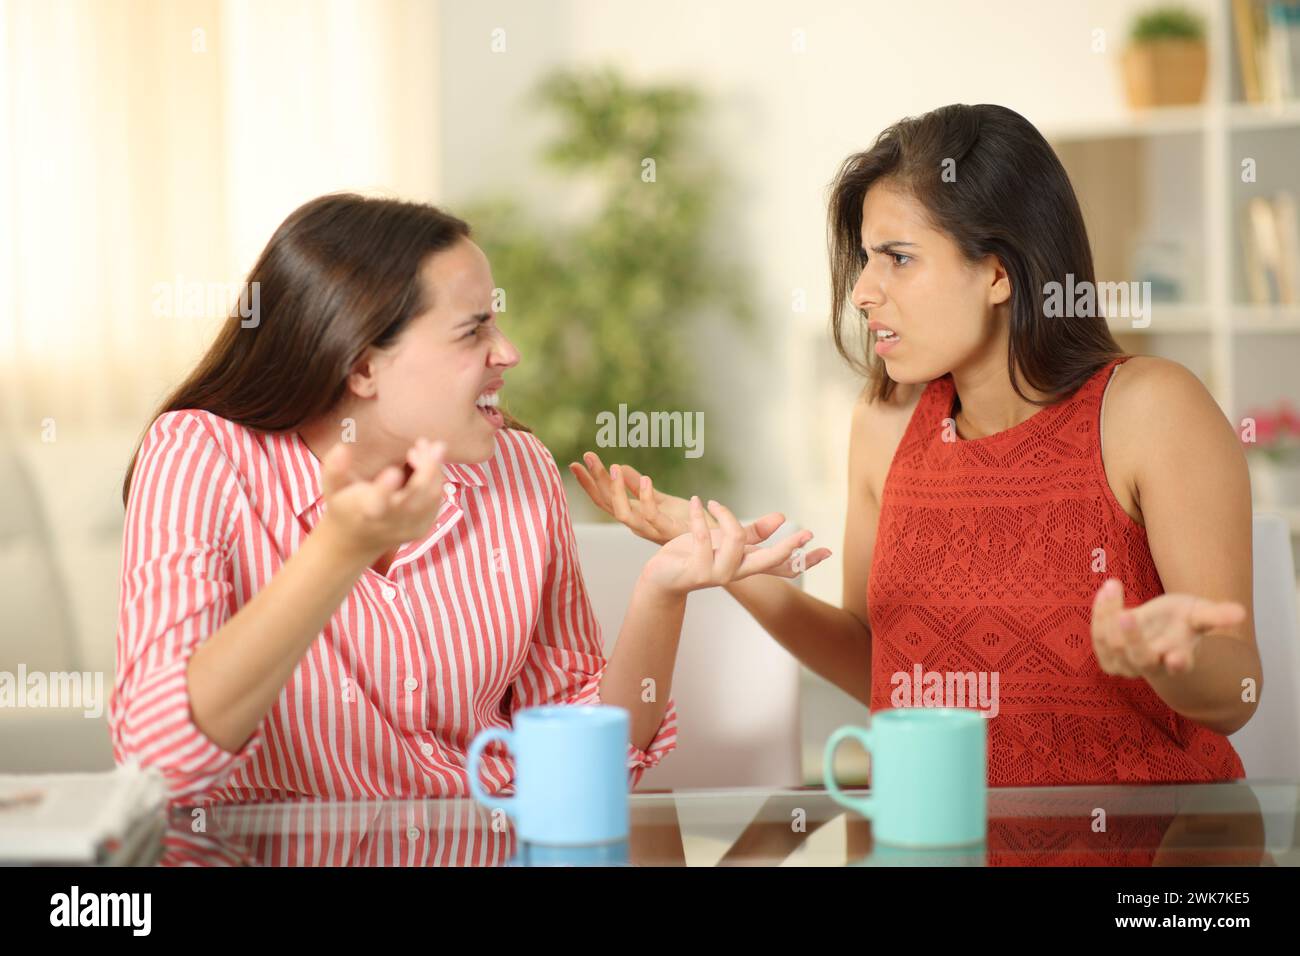 Deux femmes en colère à la maison se disputant à la pause-café Banque D'Images